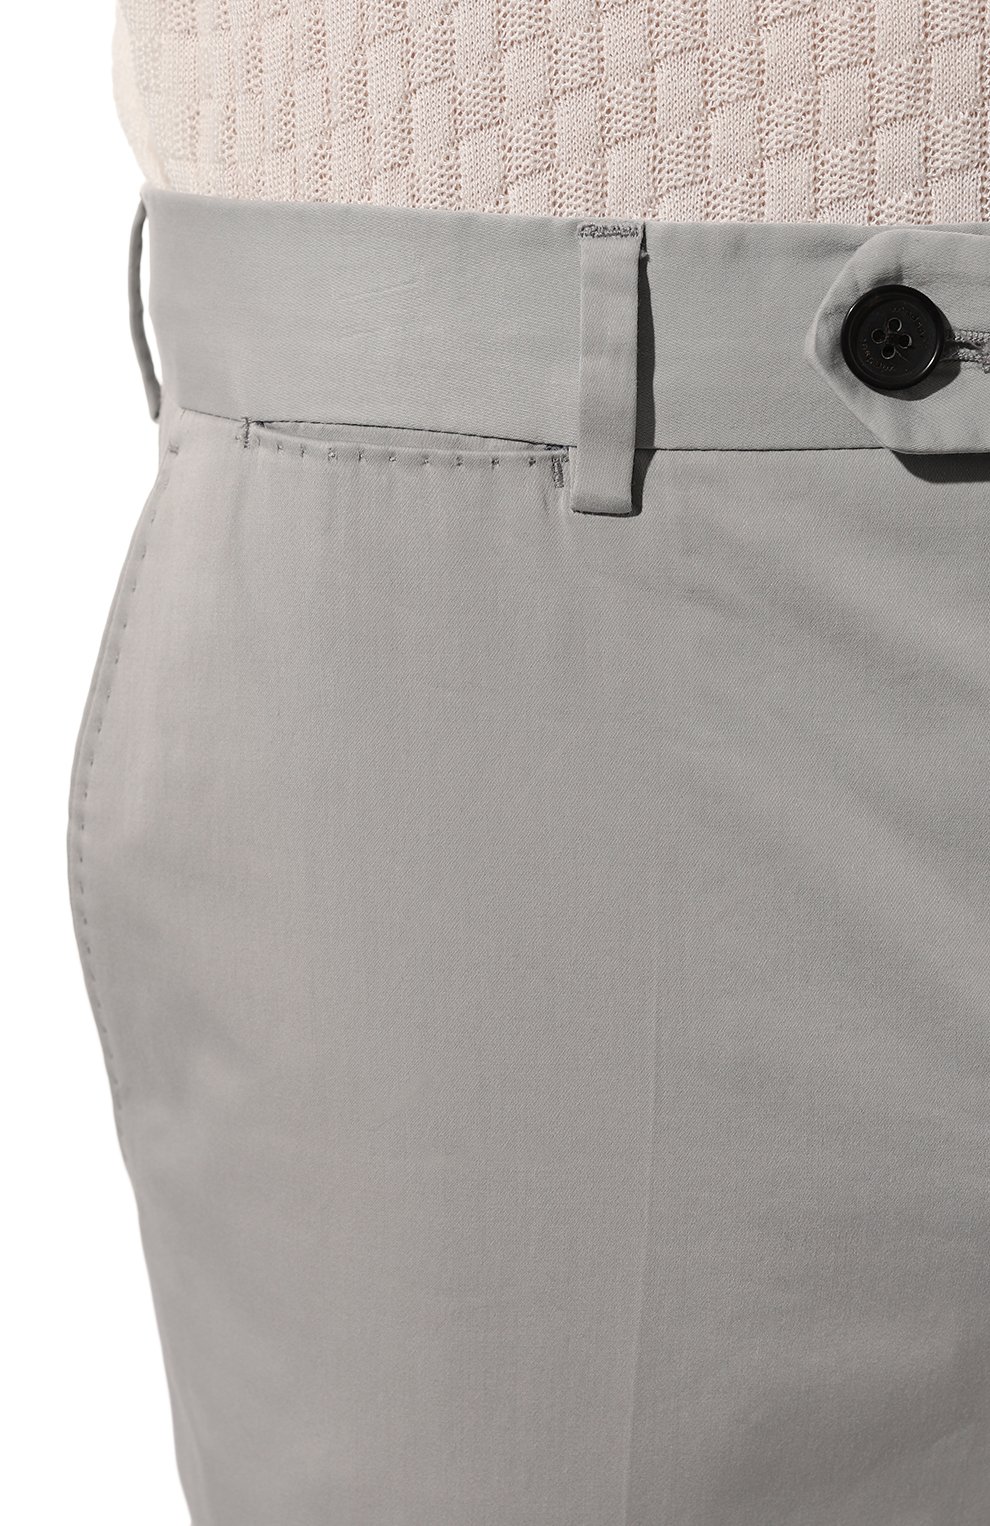 Мужские светло-серые брюки из хлопка и шелка WINDSOR купить винтернет-магазине ЦУМ, арт. 13 SANTI0S-W 10009601